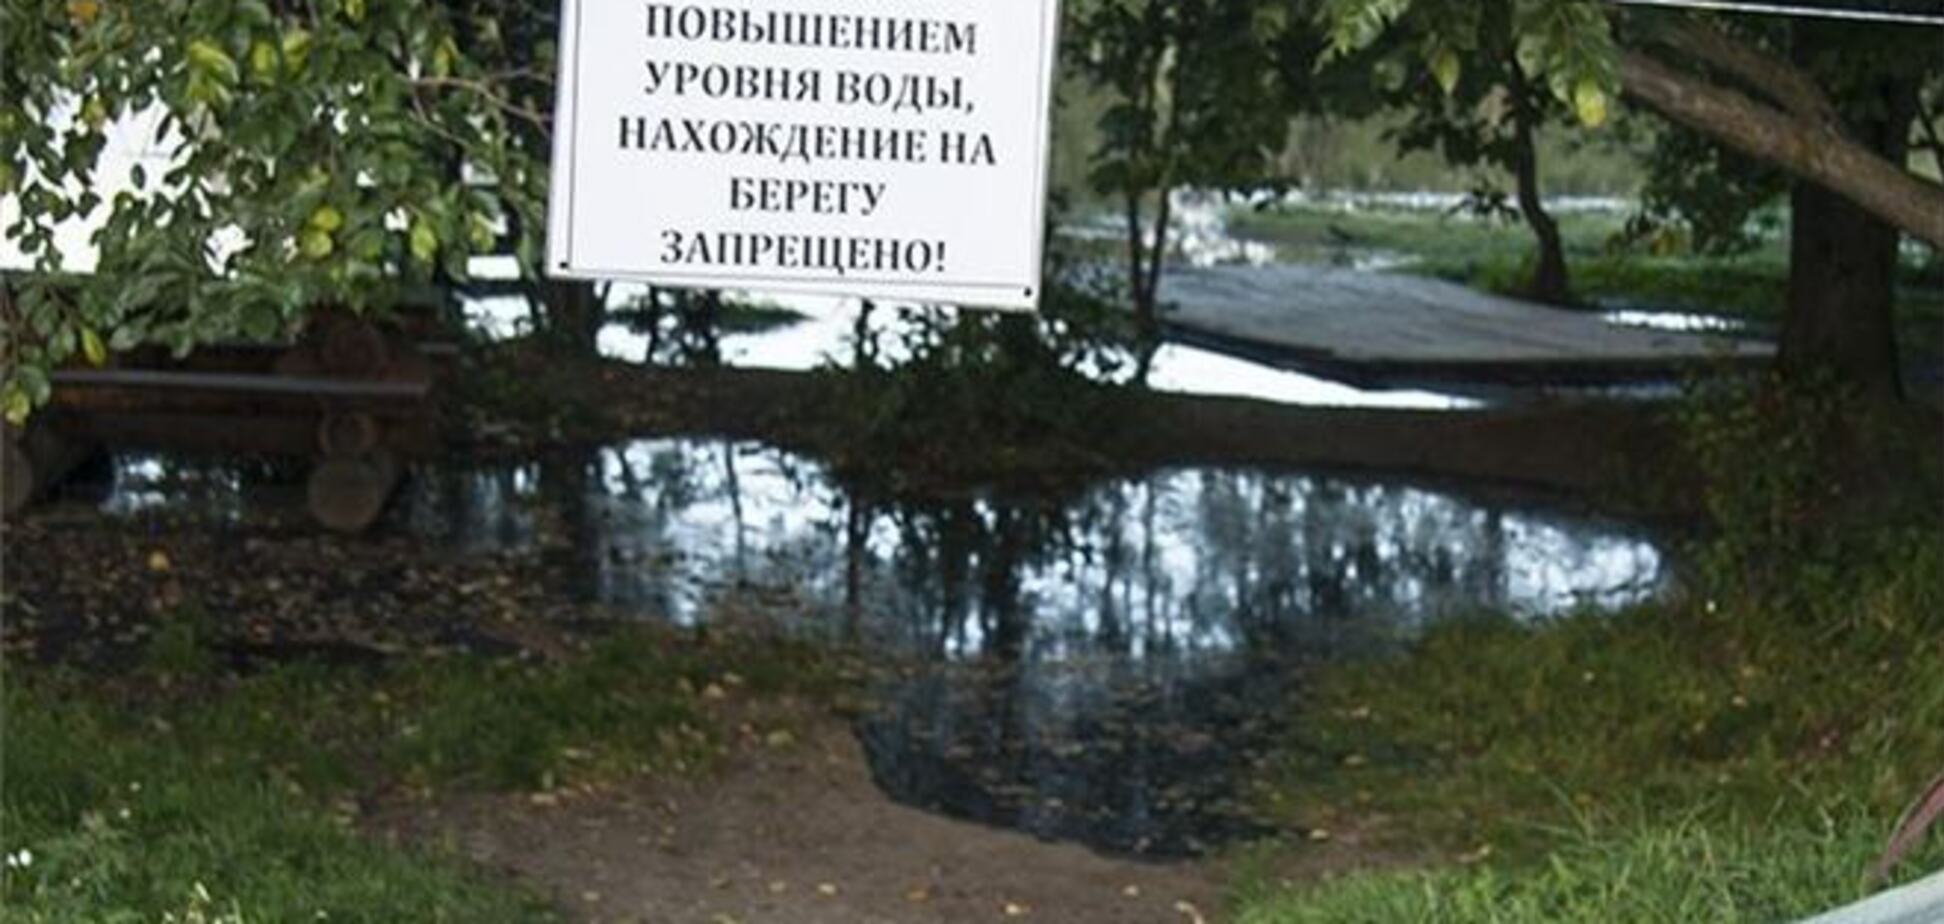 Комсомольськ-на-Амурі в очікуванні 'великої води'